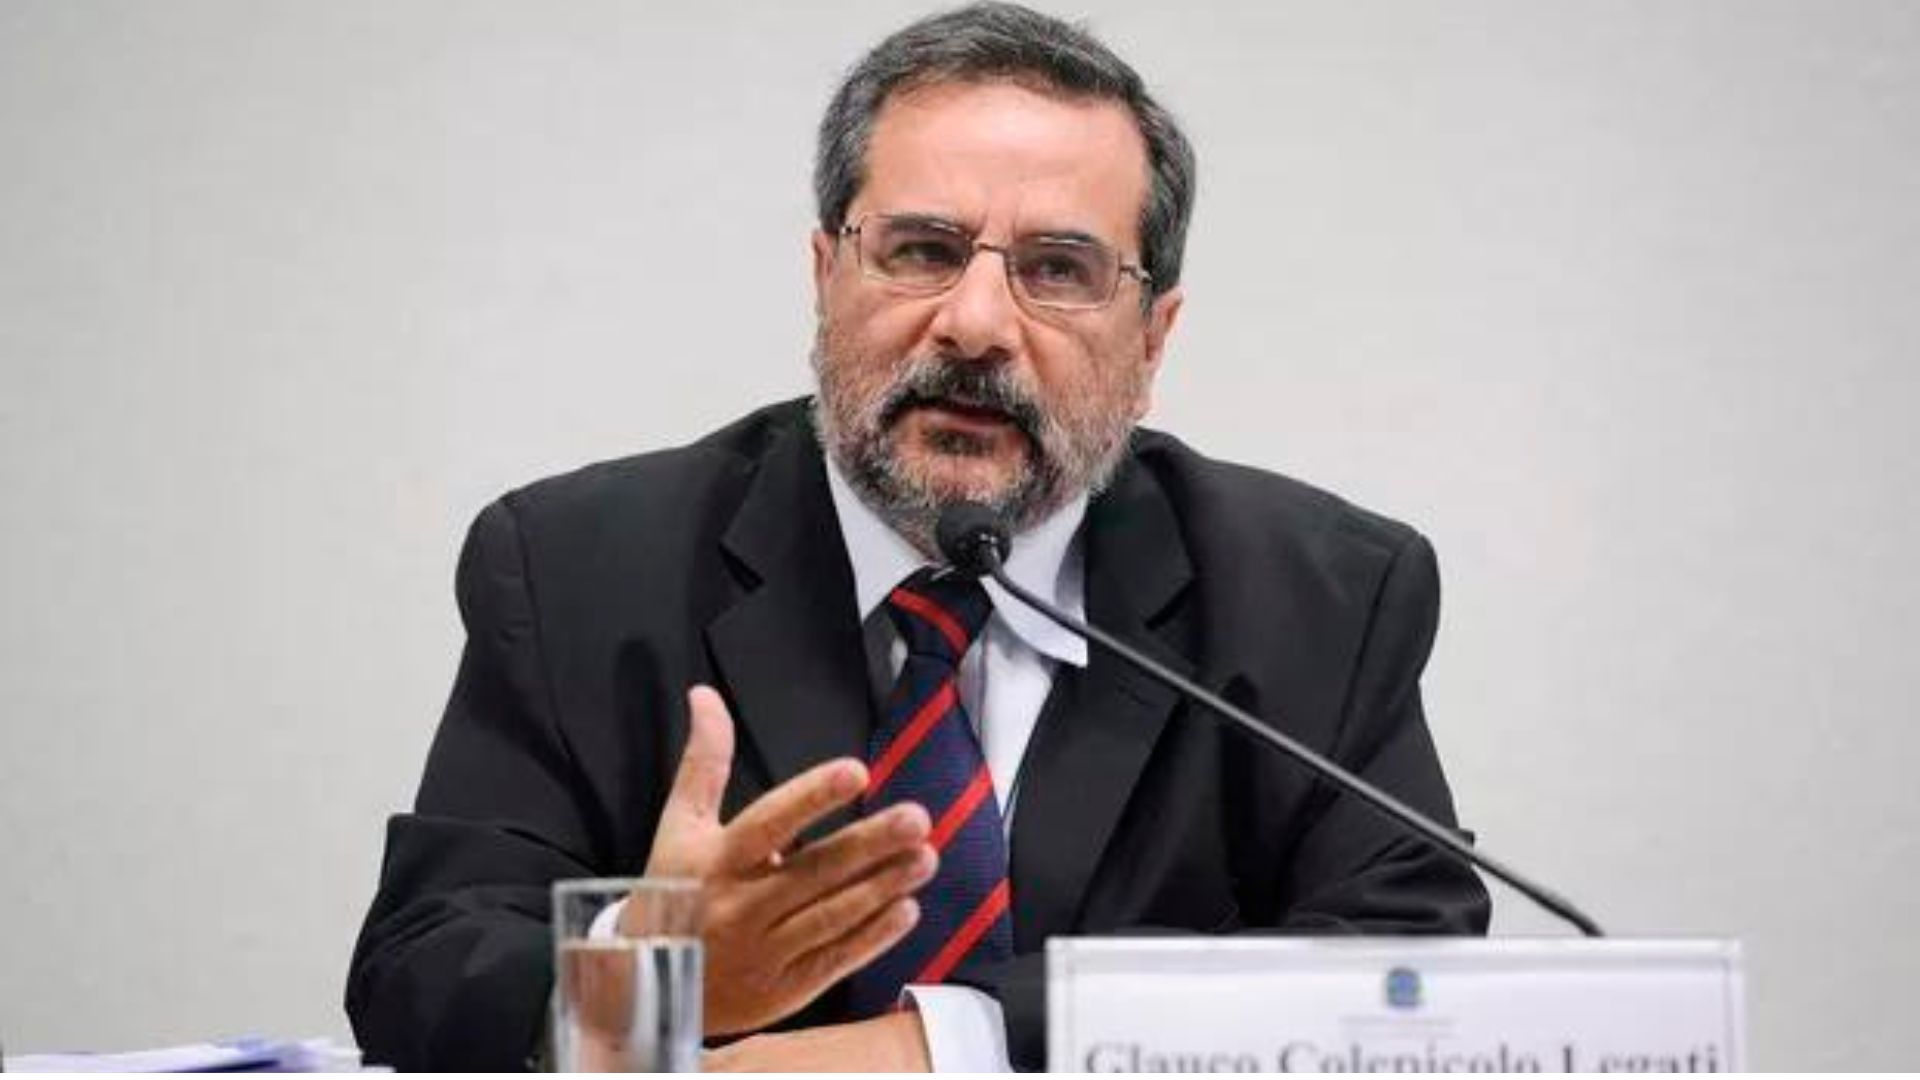 O engenheiro Glauco Colepicolo Legatti, ex-funcionário da Petrobras